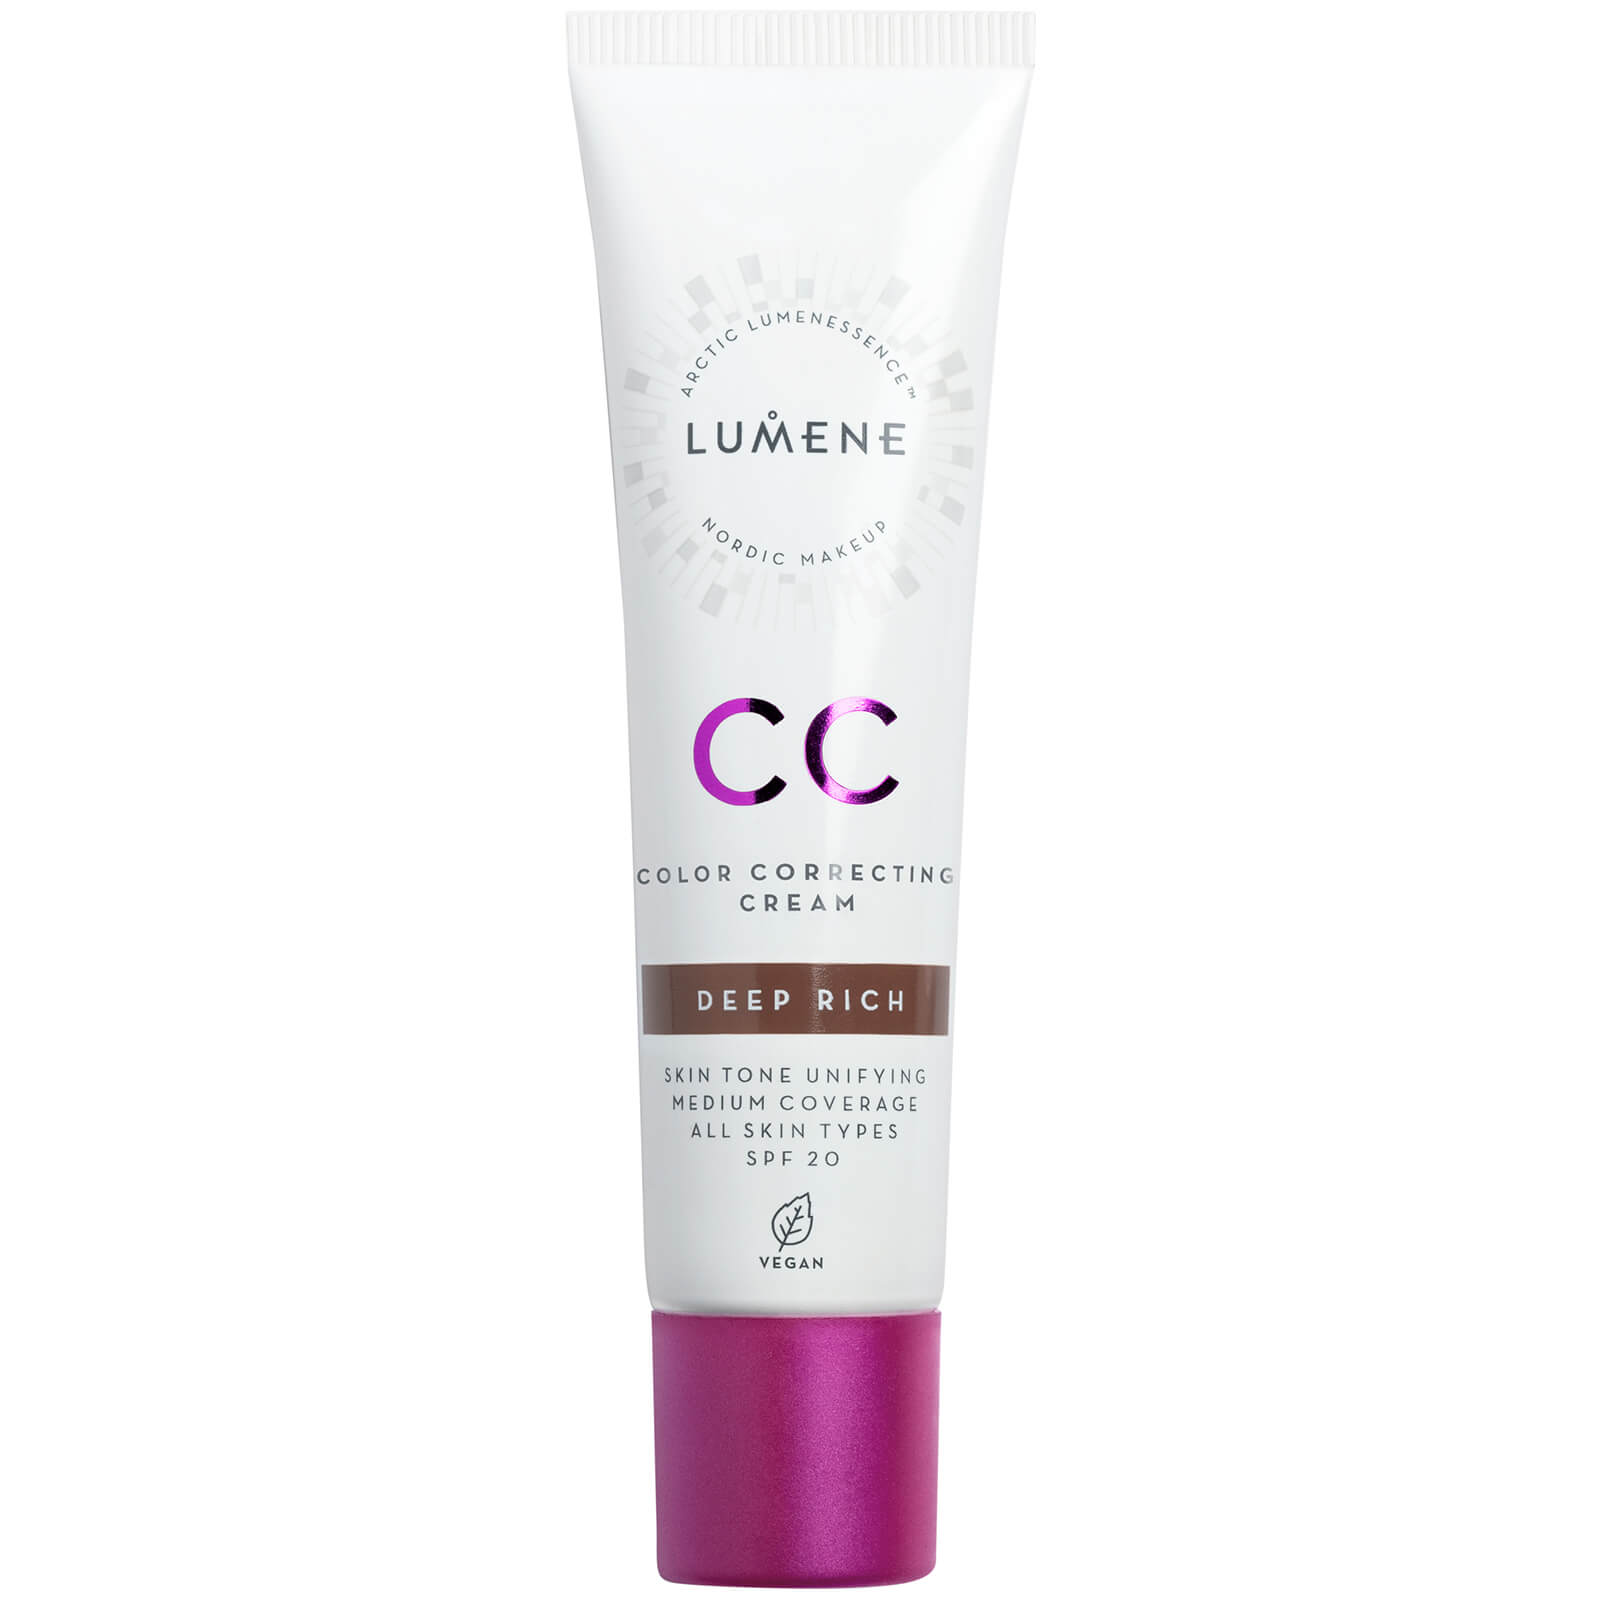 Lumene Cc Colour Correcting Cream Spf20 30ml (various Shades) - Deep Rich